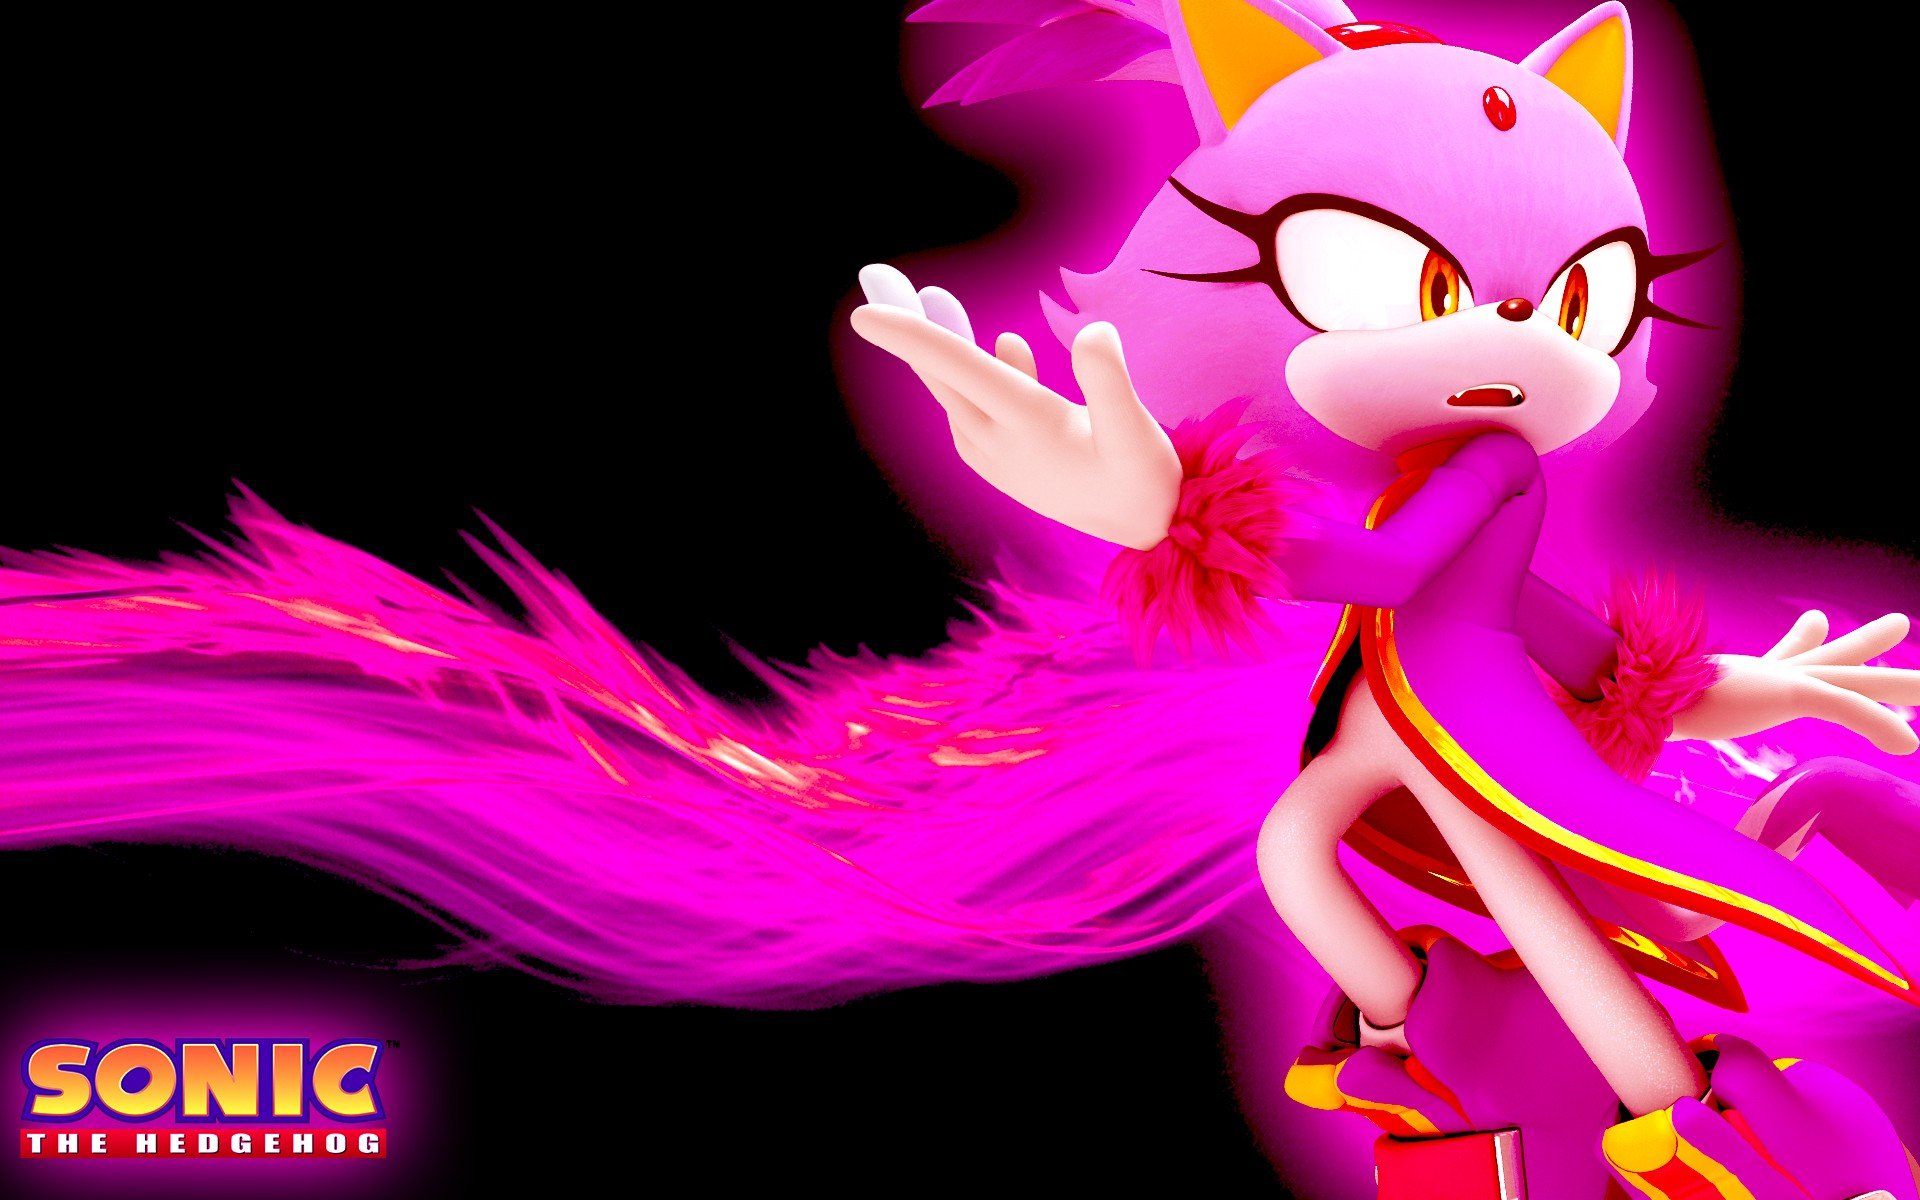 Burning Blaze (Sonic the Hedgehog) é«˜ æ¸… å£� çº¸, æ¡Œ é�¢ èƒŒ æ™¯.